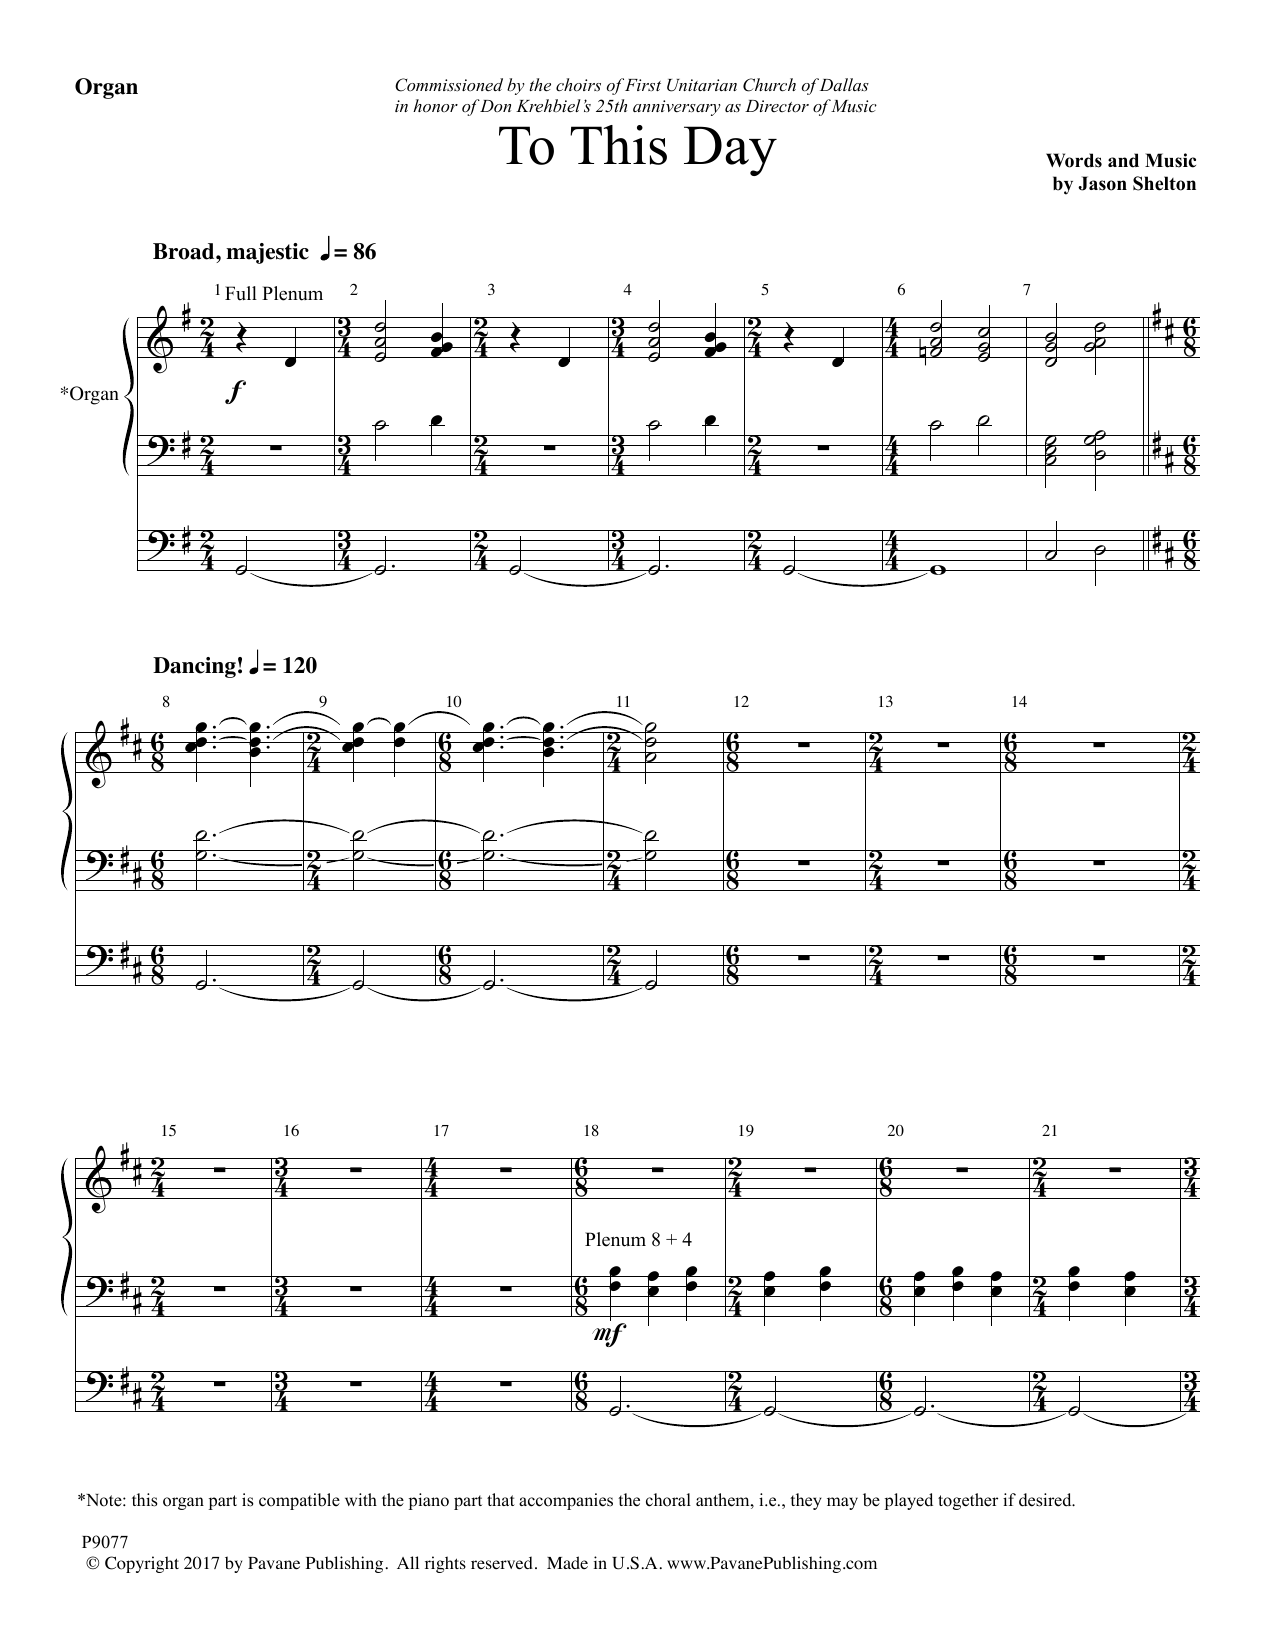 Jason Shelton To This Day - Organ Sheet Music Notes & Chords for Choir Instrumental Pak - Download or Print PDF